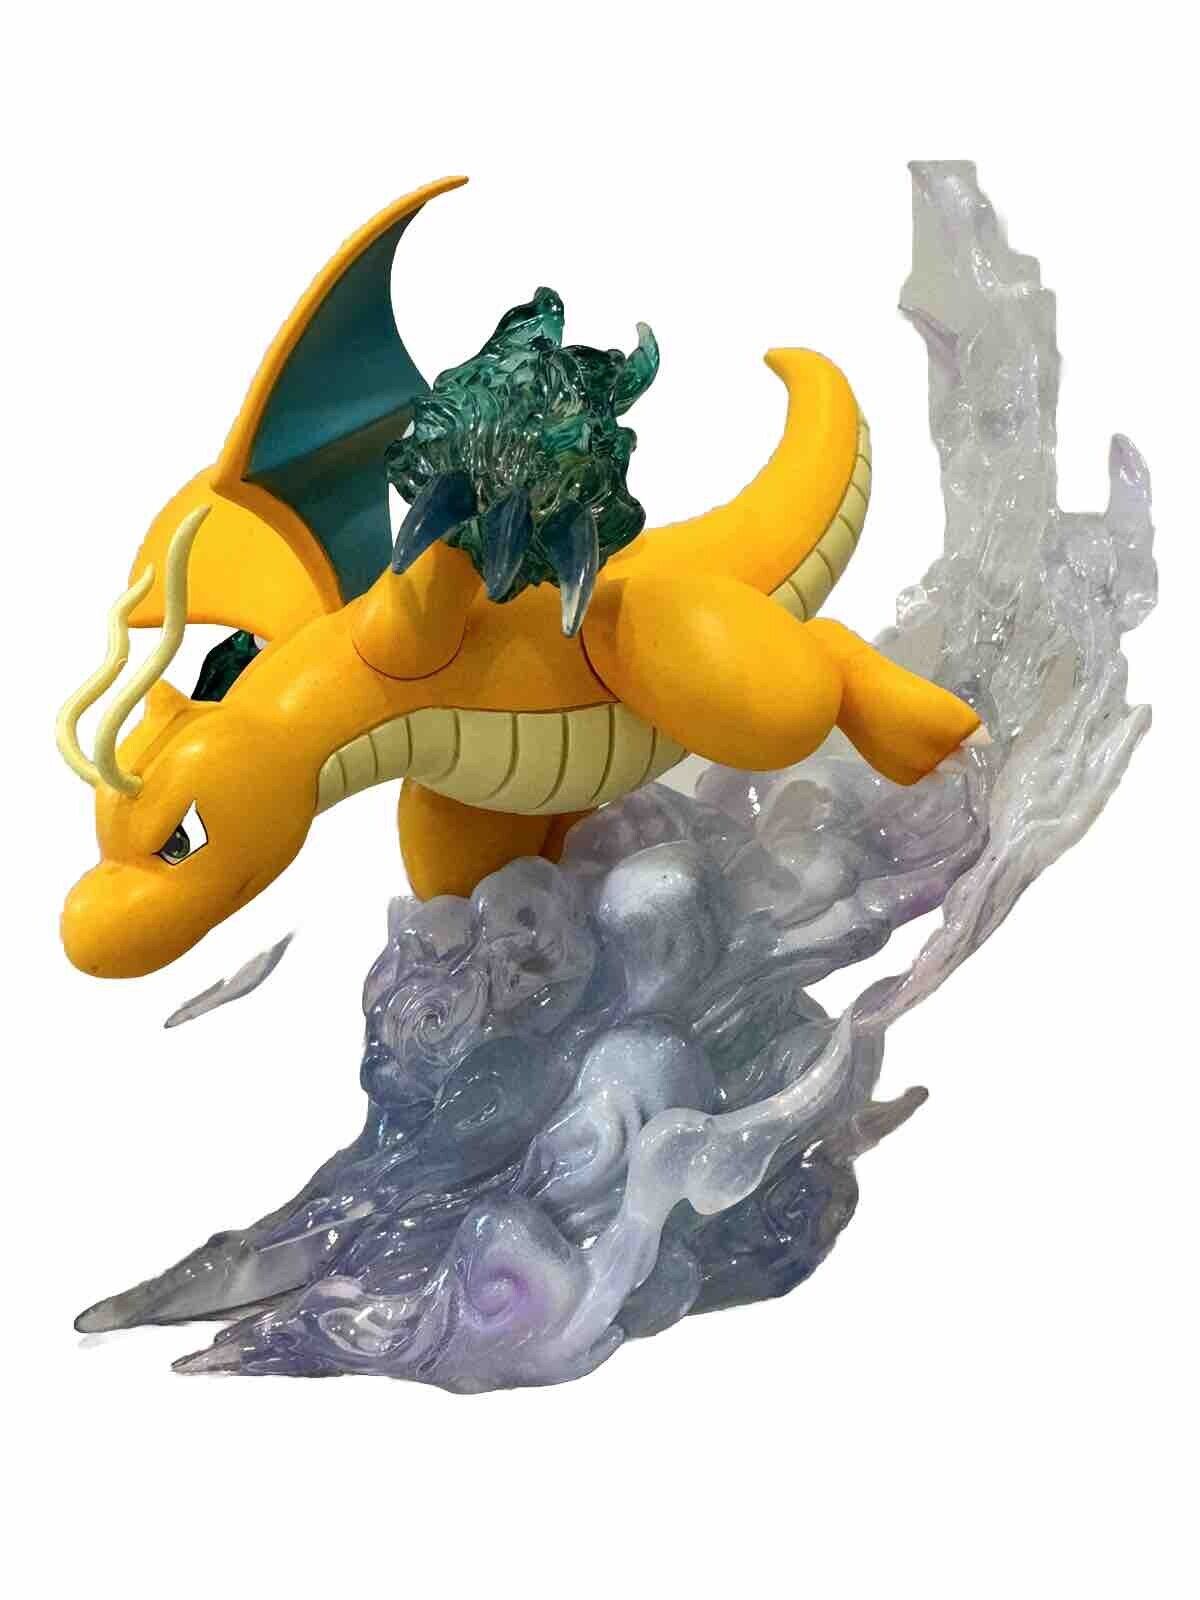 Pokemon Dragonite Dragon Attack Statue Figure Model Toy Collectible